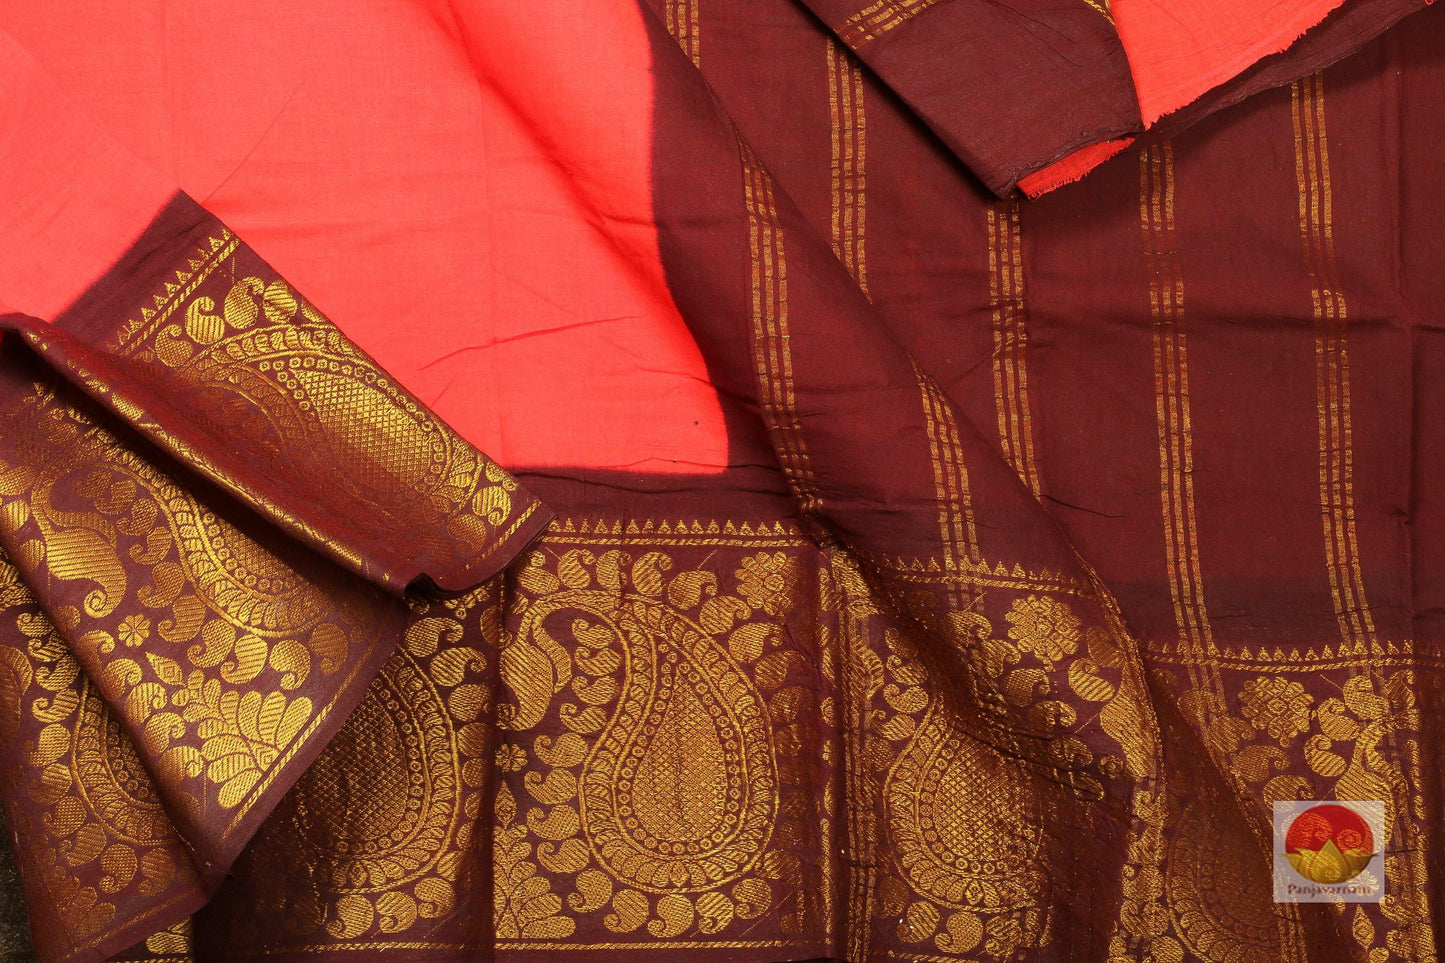 Handwoven Cotton Saree - PC 04 - Cotton Saree - Panjavarnam